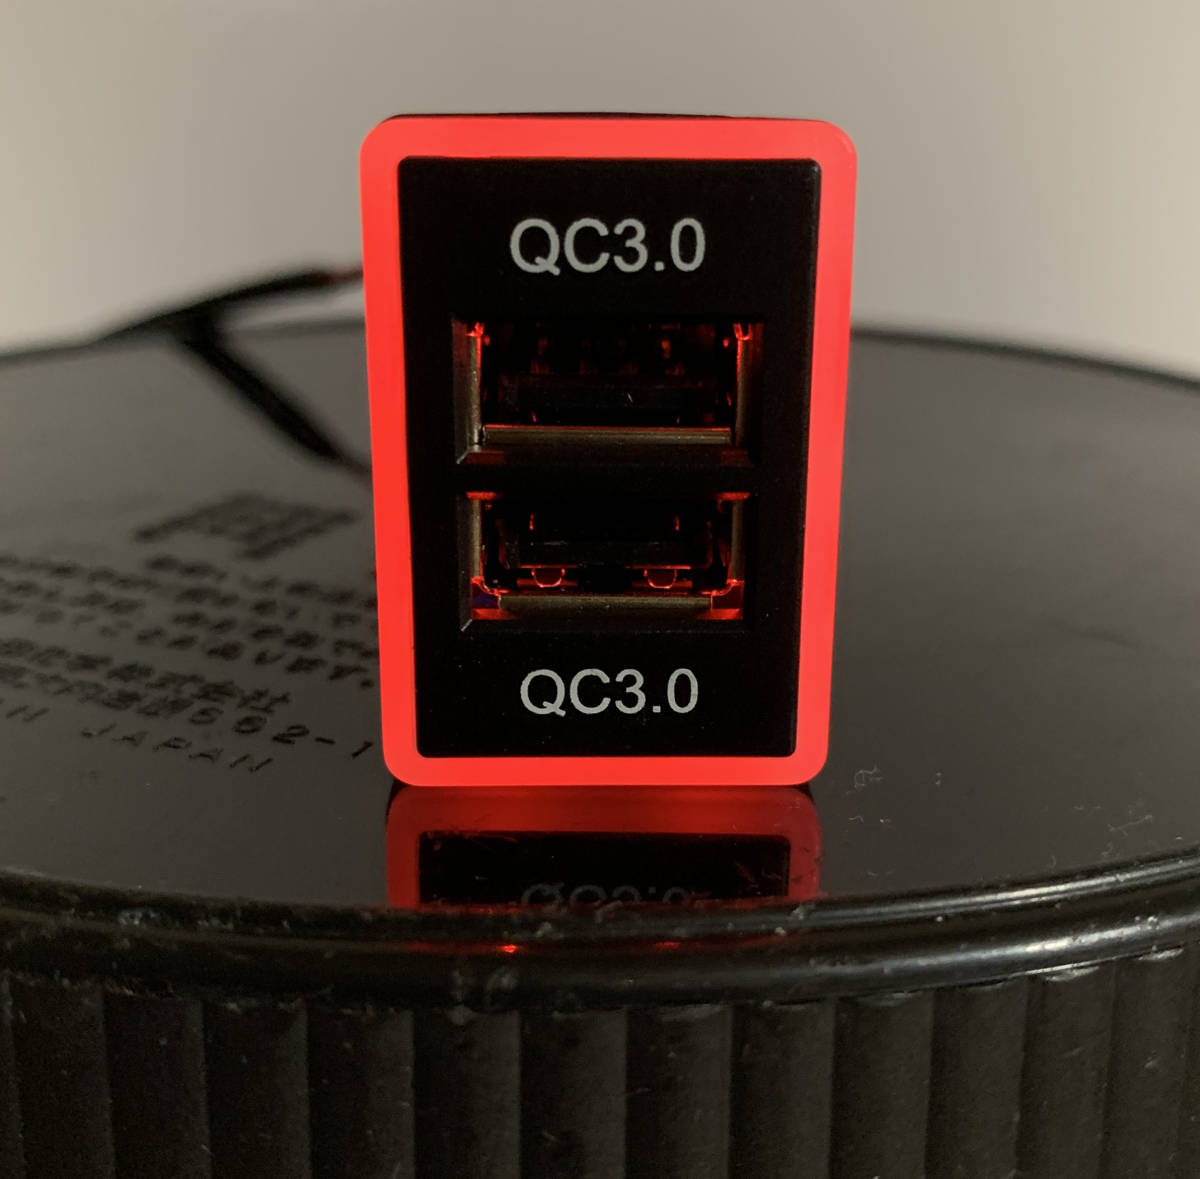 USBポート スイッチホール チャージャー 急速充電対応 LED発光 赤 ミラ コペン キャディー ハイゼット メビウス アルティス ミラカスタム 新製品情報も満載 評価